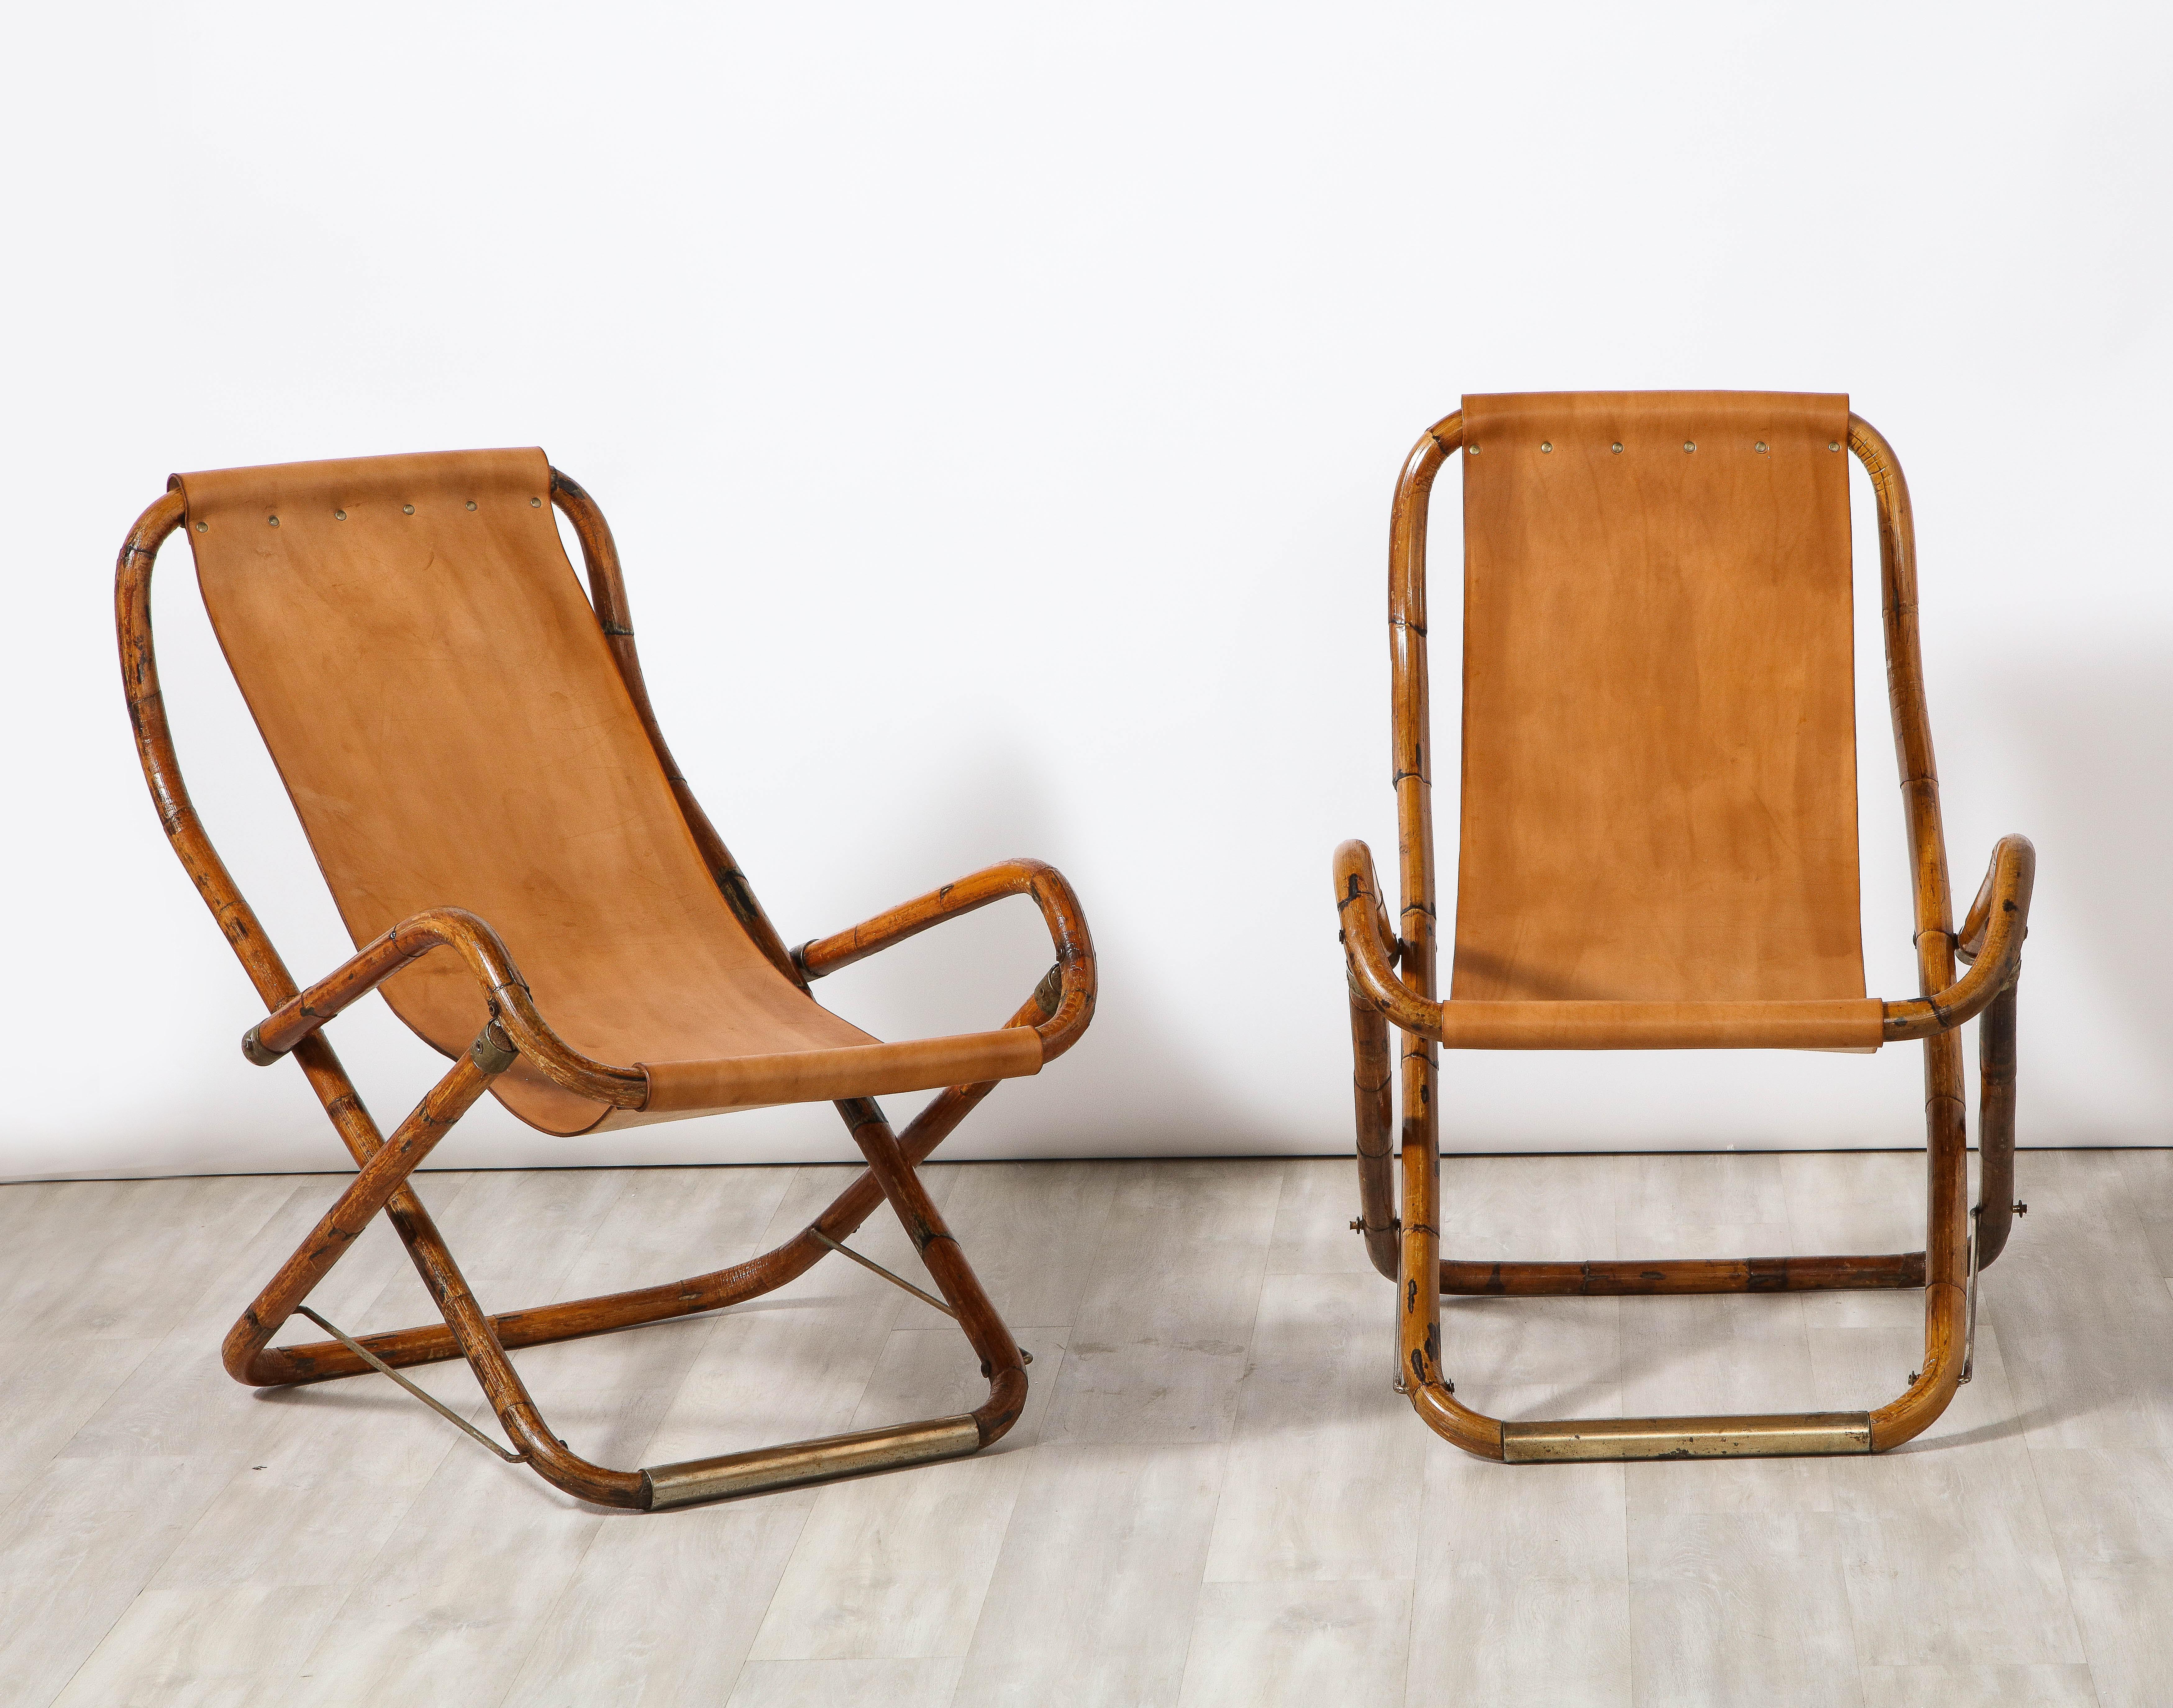 Gianfranco Frattini pour Bernini : paire de chaises de campagne pliantes italiennes, composées de bambou avec des châssis et des détails en laiton et des sièges en cuir caramel. (Les chaises se plient avec des sangles en cuir). Un complément chic à